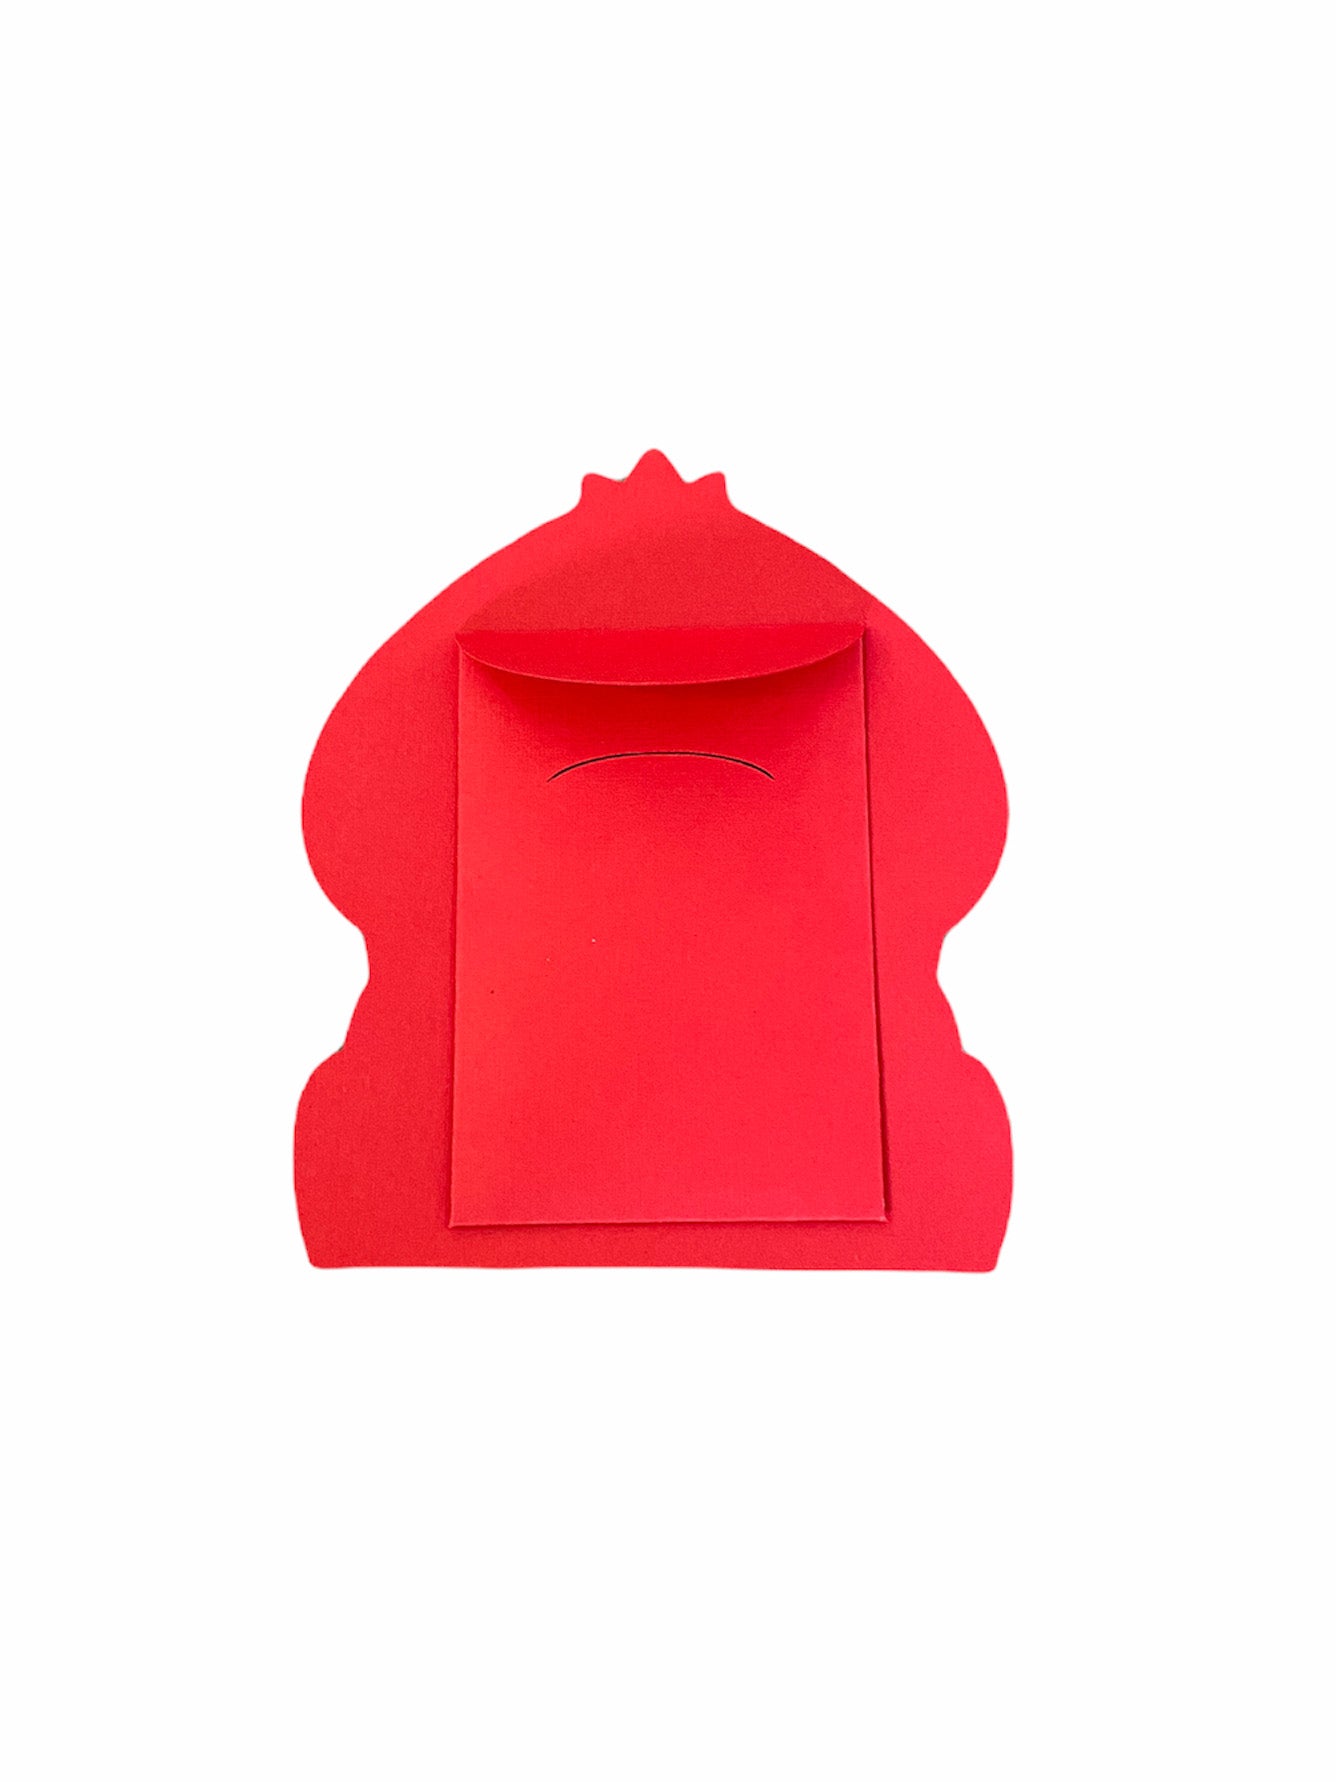 Chunkémon Bulbasaur Red Envelope